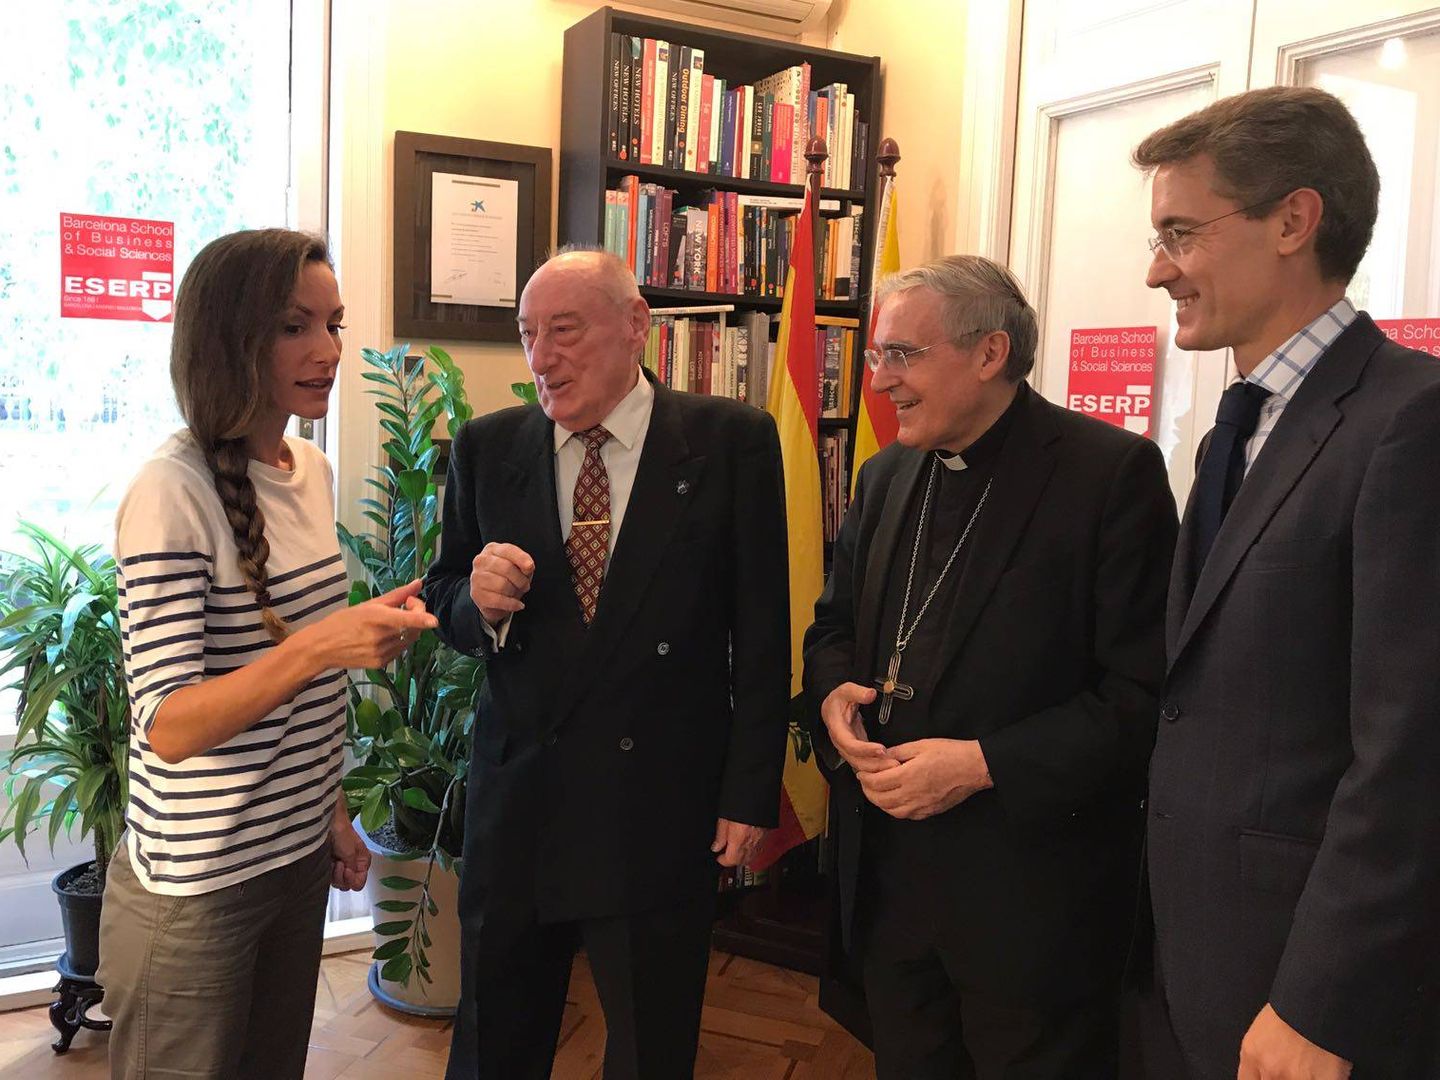 De izquierda a derecha: Telma Ortiz, el reverendo Santiago Bueno, el cardenal de Barcelona y José Barquero. (ESERP)